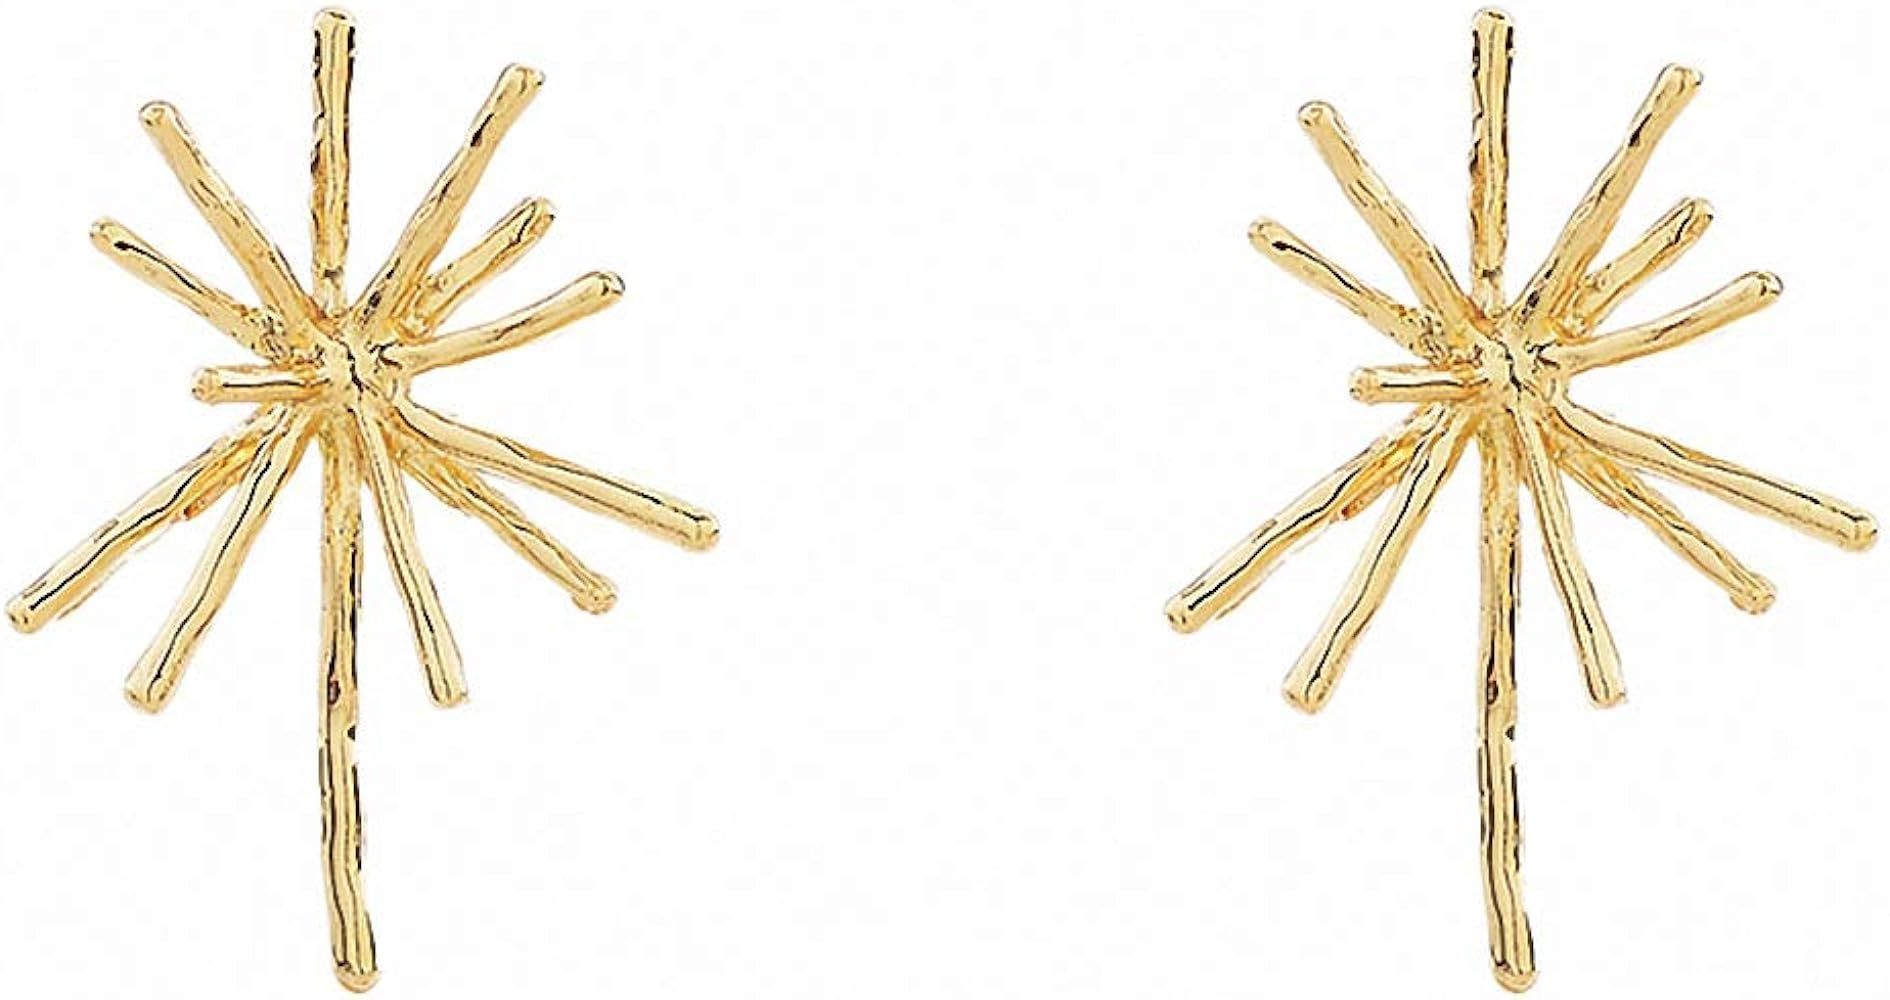 Jana WinkleGold Metal Firework Stud Earrings Women Big Earrings Studs Statement Chandelier Earrin... | Amazon (US)